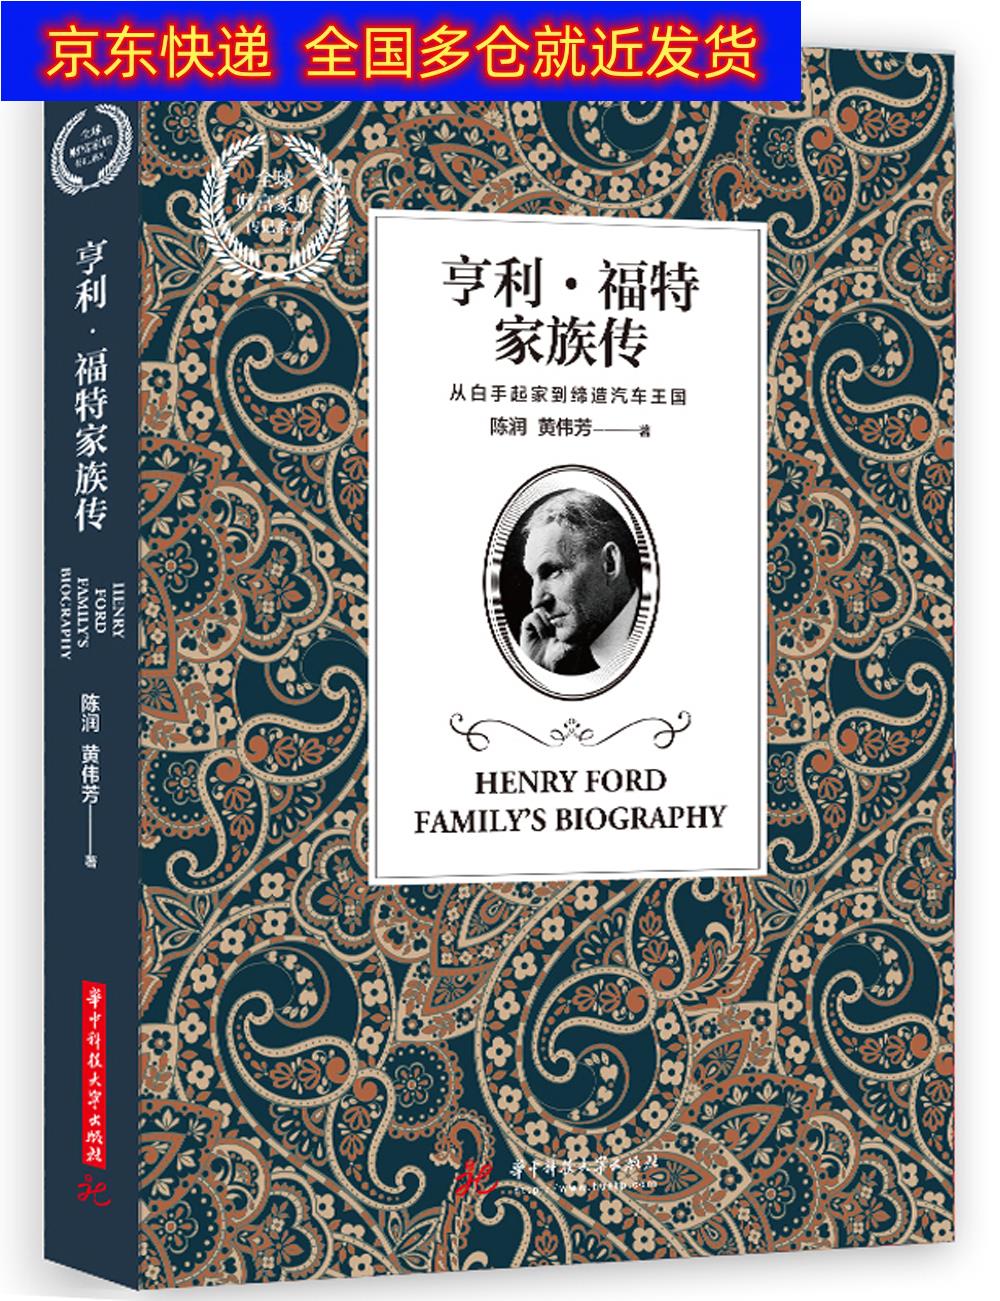 书 亨利·福特家族传 家庭传记类图书 亨利福特家族传